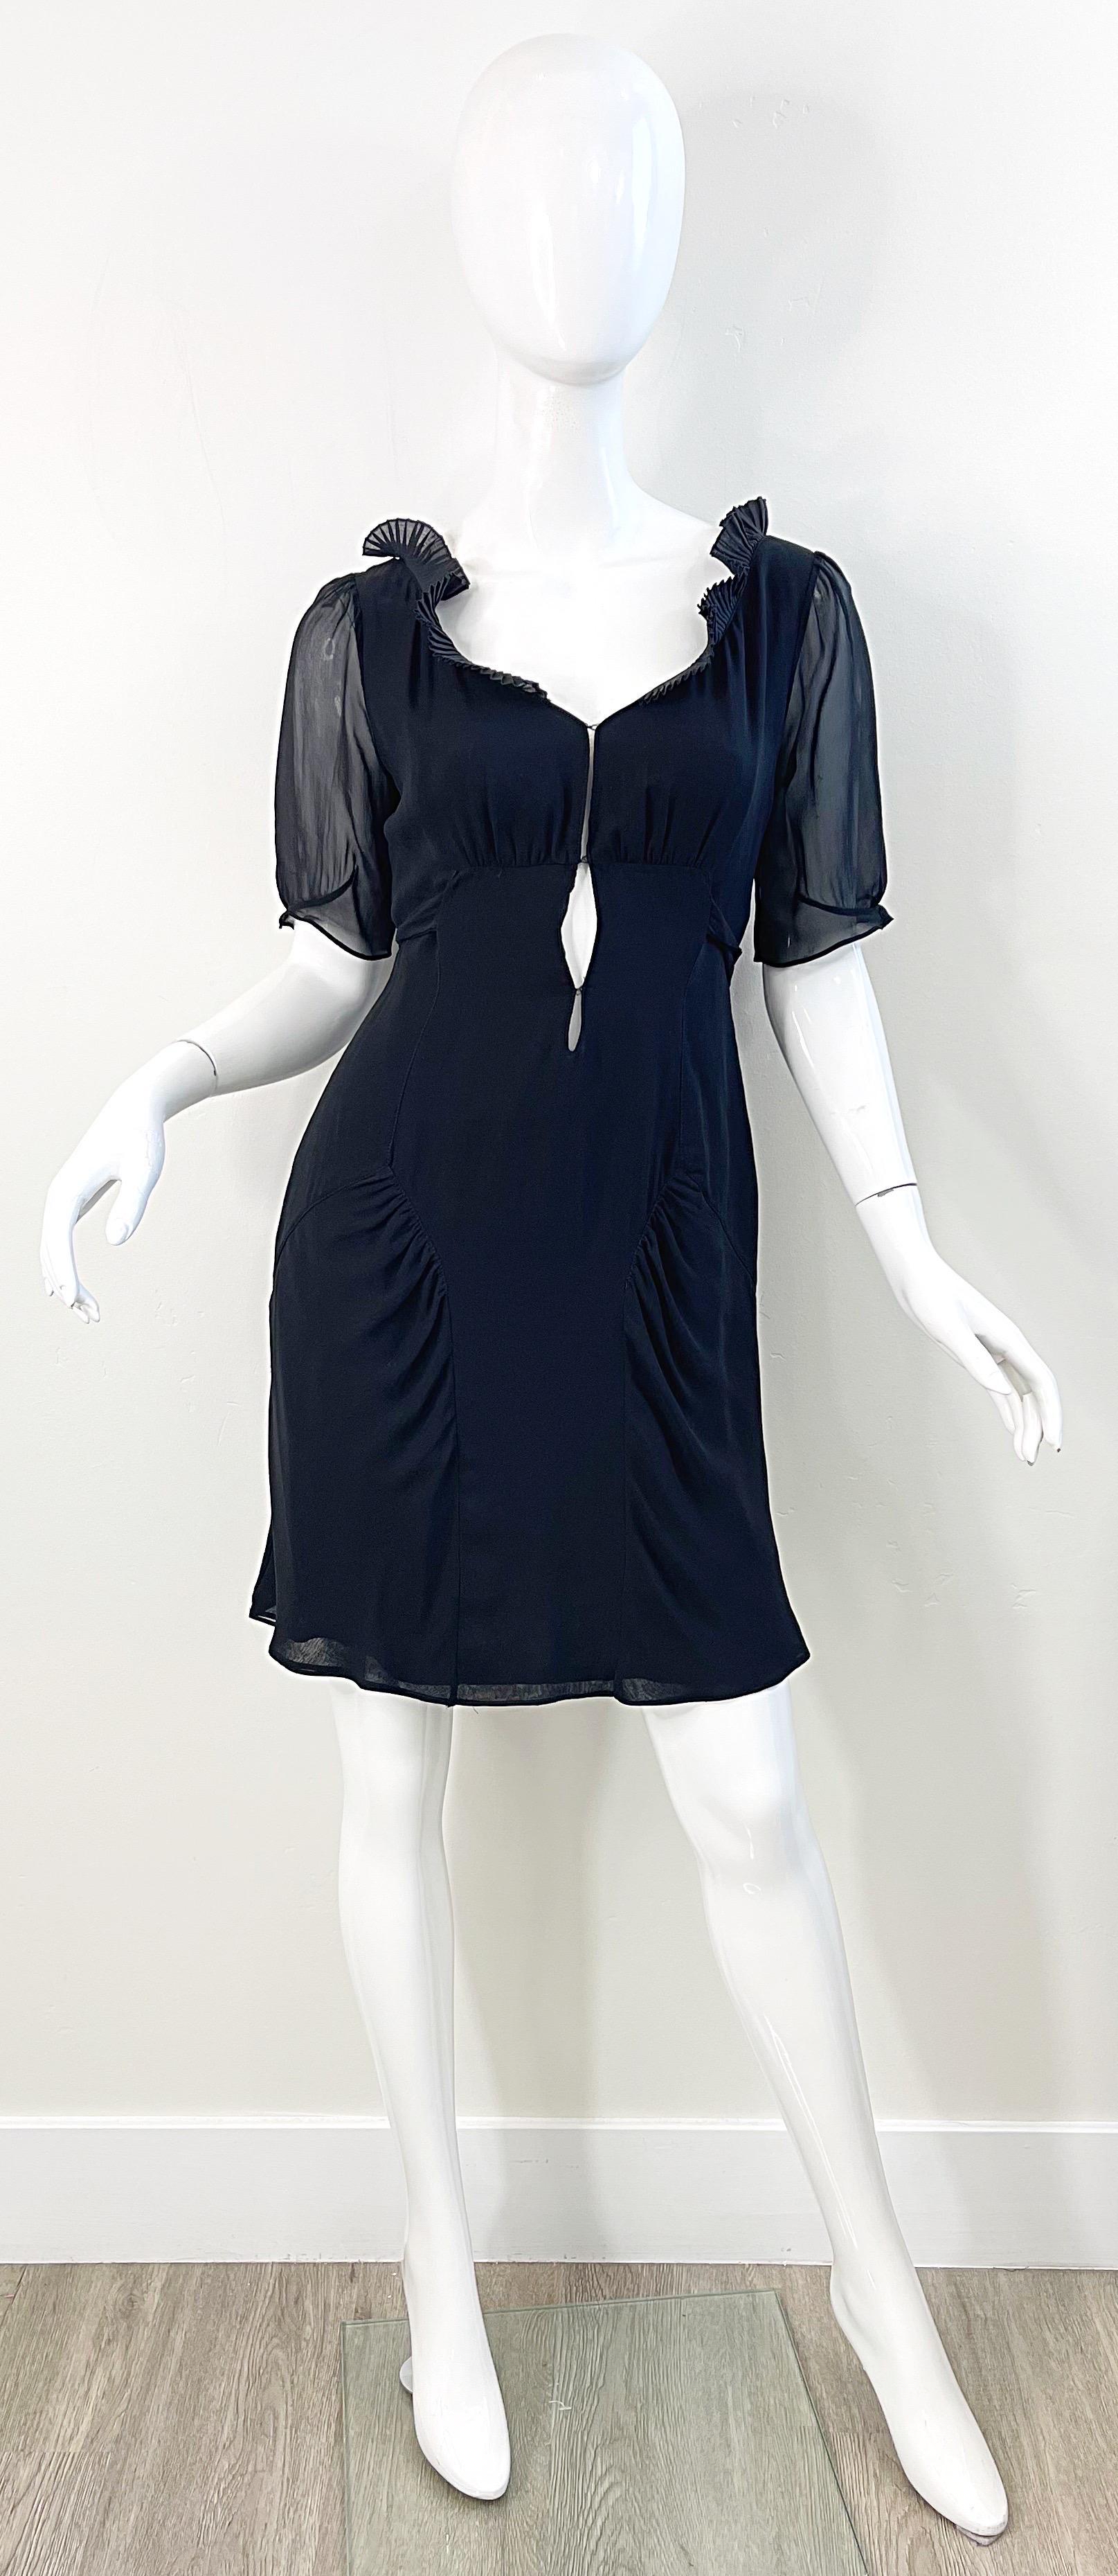 Fin des années 90 COSTUME NATIONAL robe babydoll en mousseline de soie noire à manches courtes et découpes ! Il se compose de plusieurs couches de mousseline de soie douce. Liens dans le dos. Deux fermetures auto-agrippantes au niveau du buste.